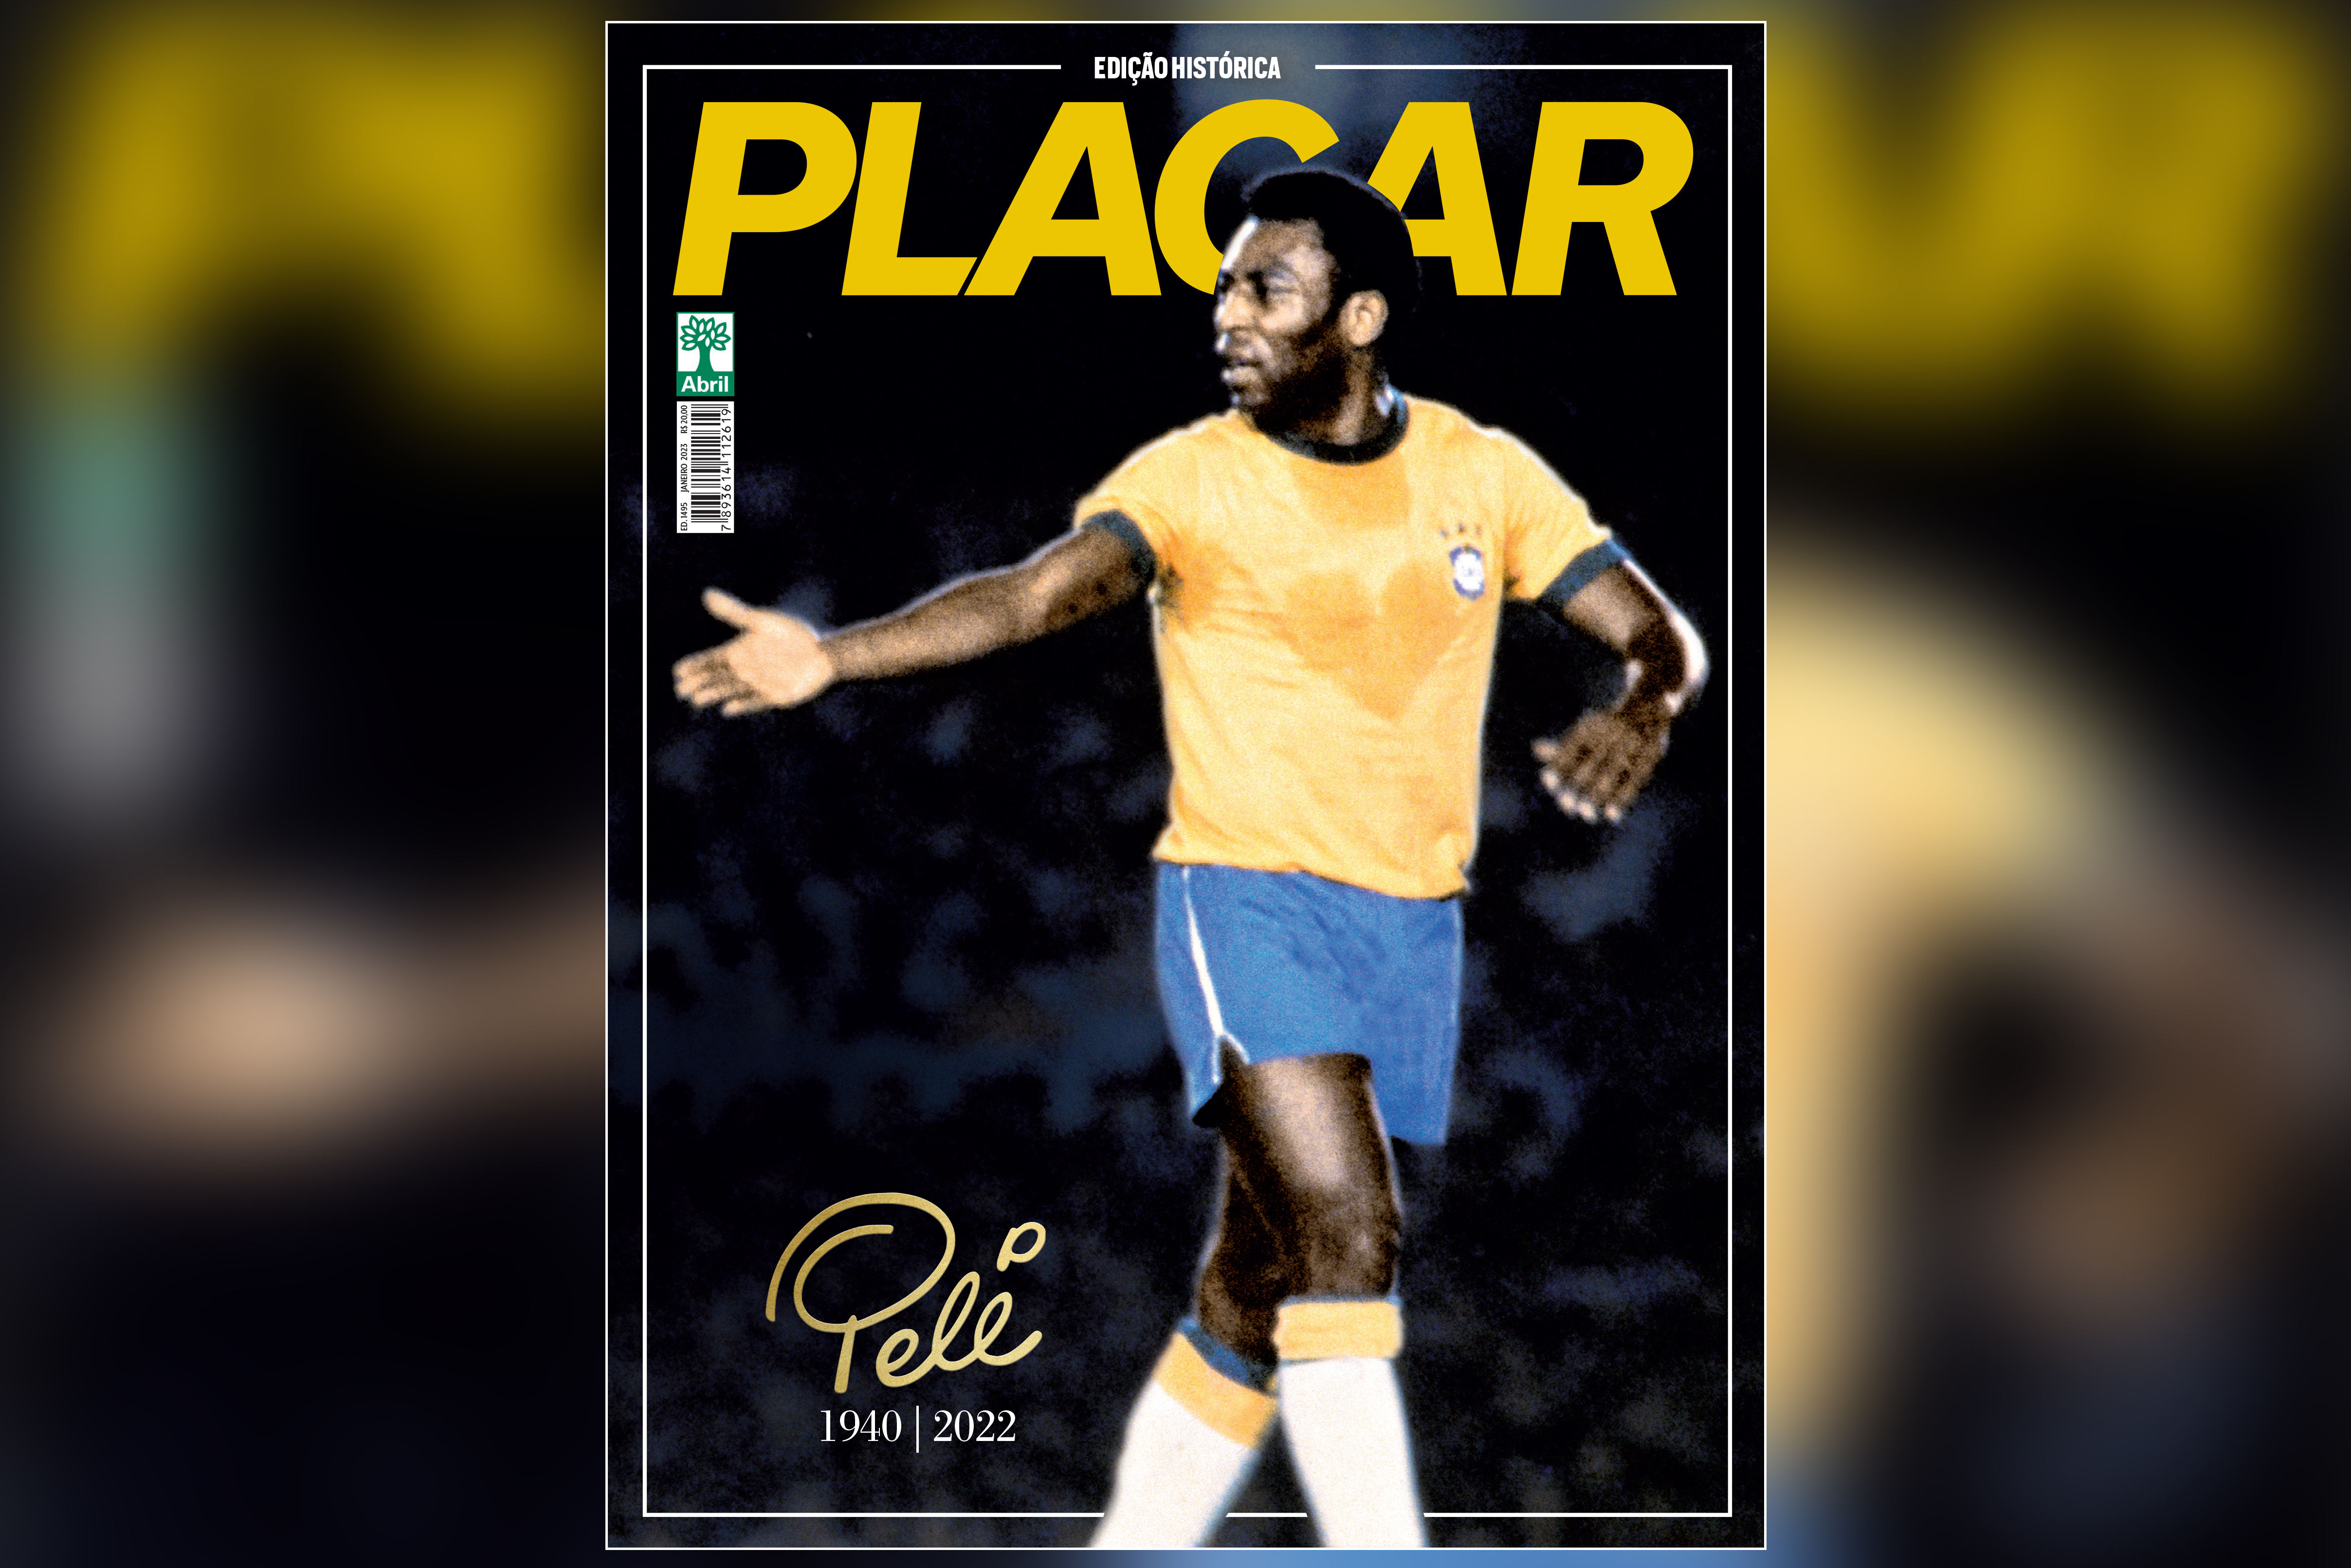 Edição de colecionador de PLACAR homenageia o Rei Pelé